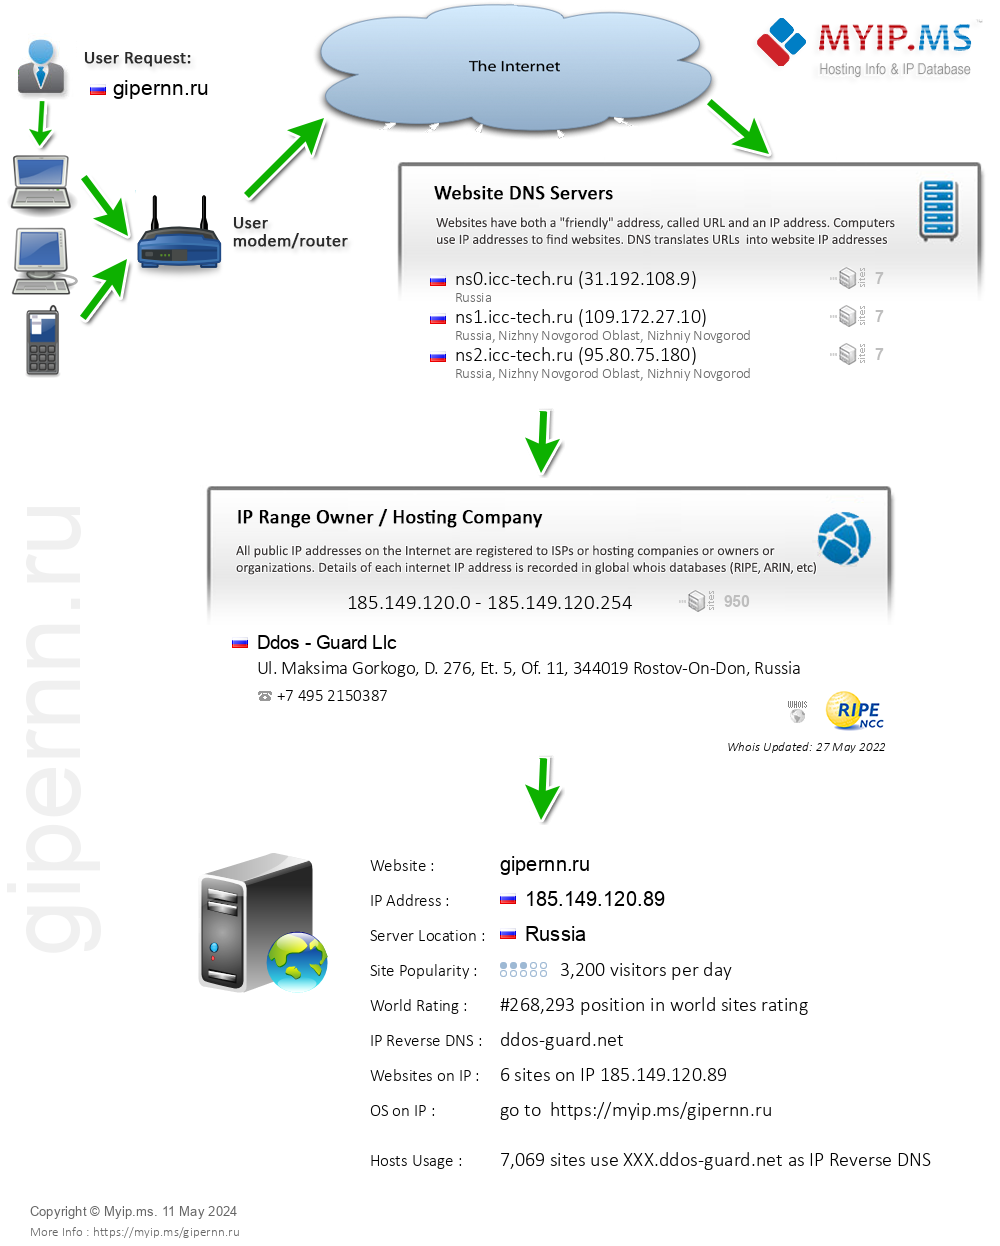 Gipernn.ru - Website Hosting Visual IP Diagram